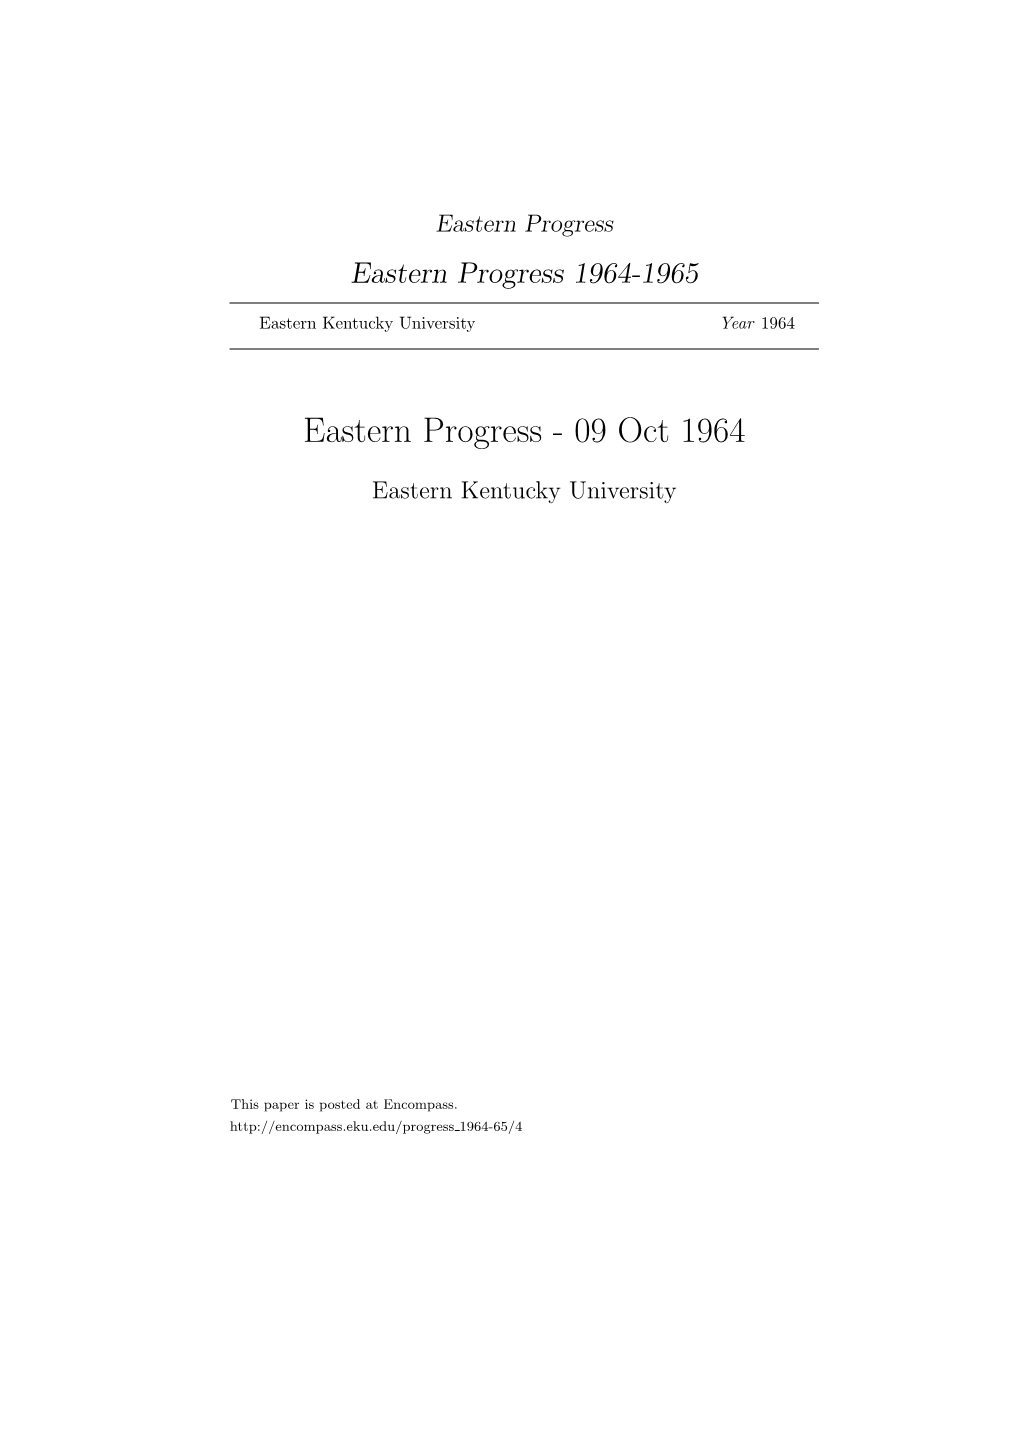 Eastern Progress Eastern Progress 1964-1965